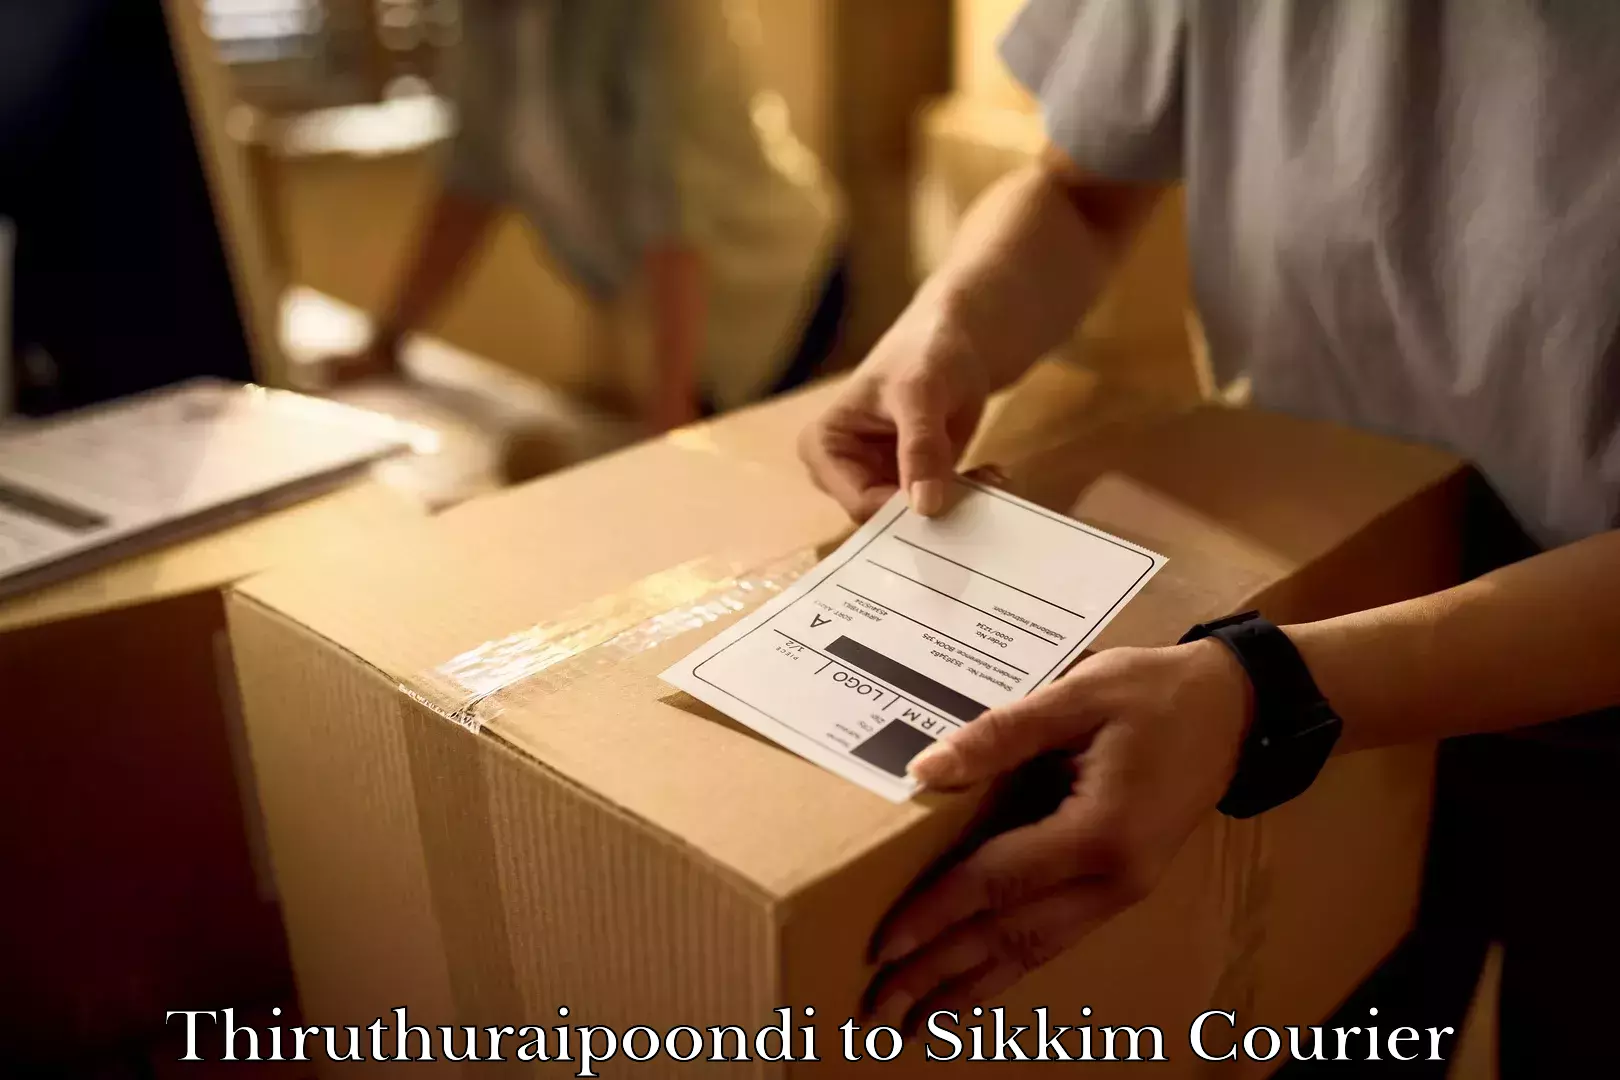 Furniture transport experts Thiruthuraipoondi to North Sikkim